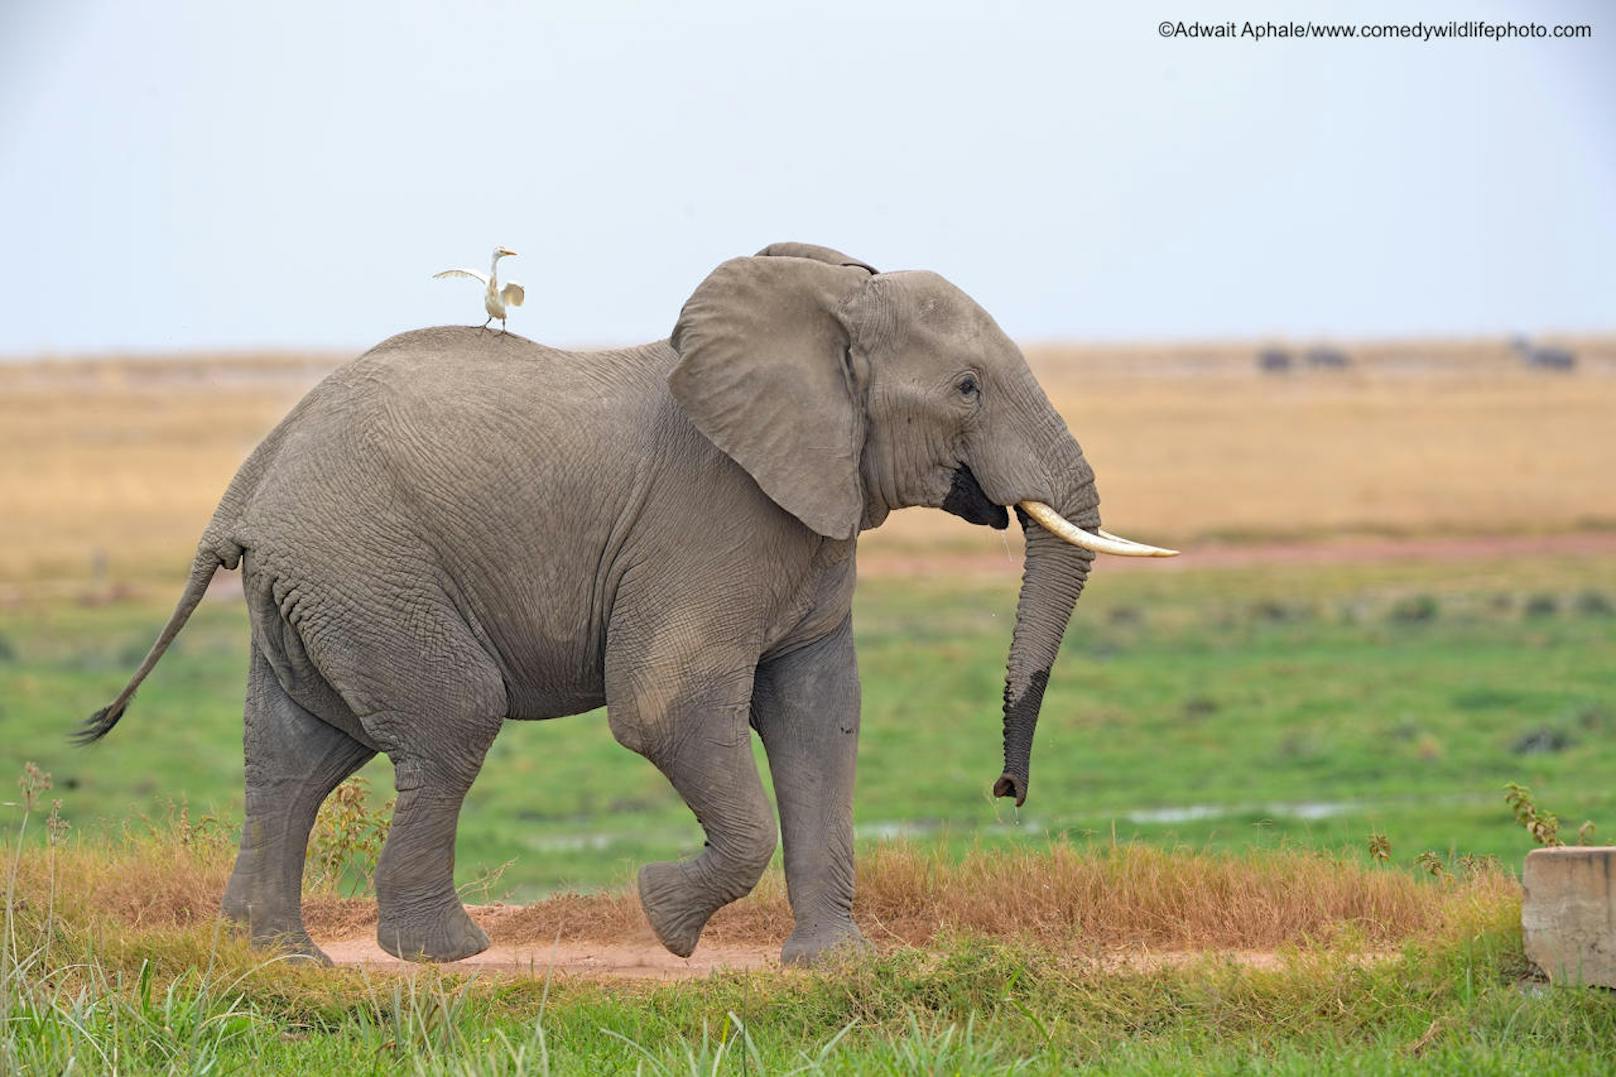 <b>Reiher lässt sich von Elefant ein Stückchen mitnehmen</b>

" I am gonna  enjoy the ride ..!!" von Adwait Aphale
Ort: Indien